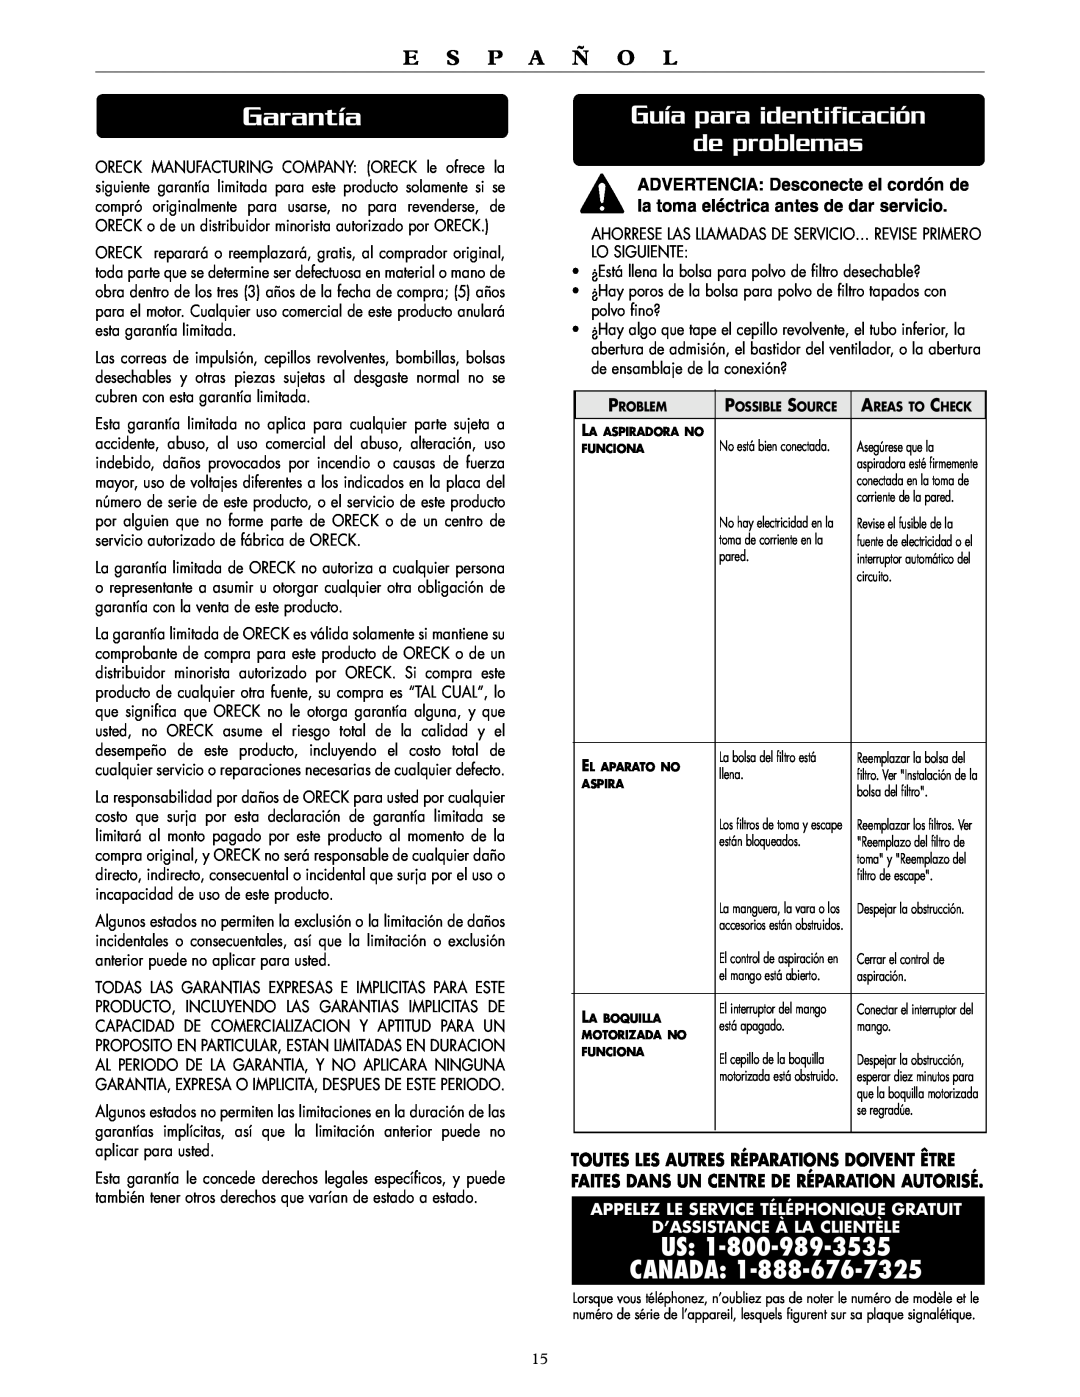 Oreck DTX 1100 Garantía, Guía para identificación de problemas, Toutes Les Autres Réparations Doivent Être, Us Canada 